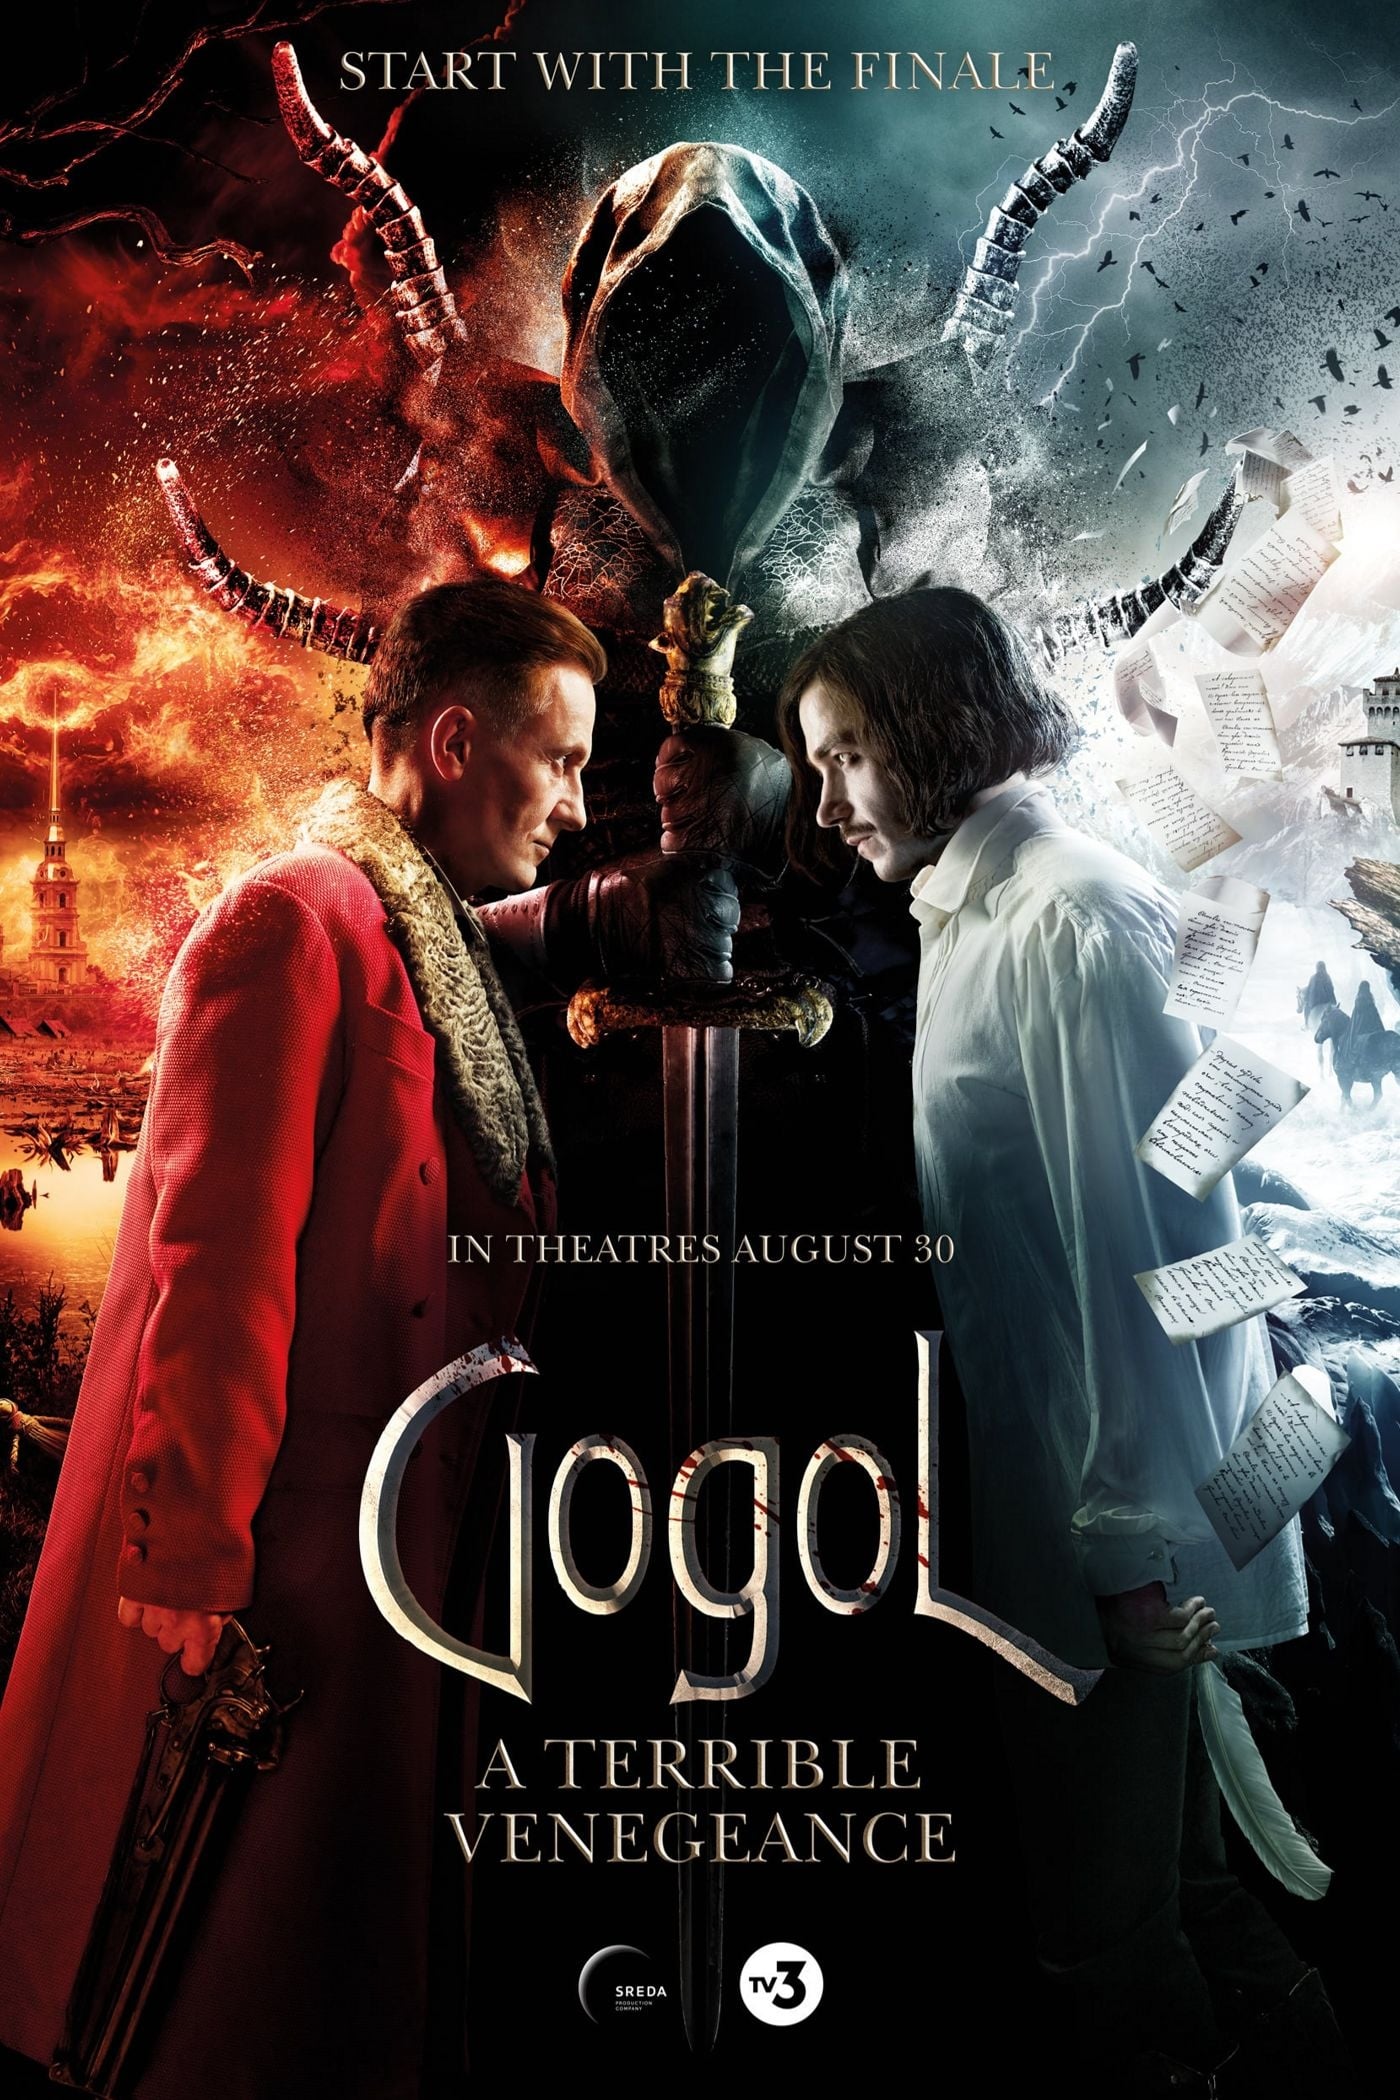 Plakát pro film “Gogol. A Terrible Vengeance”